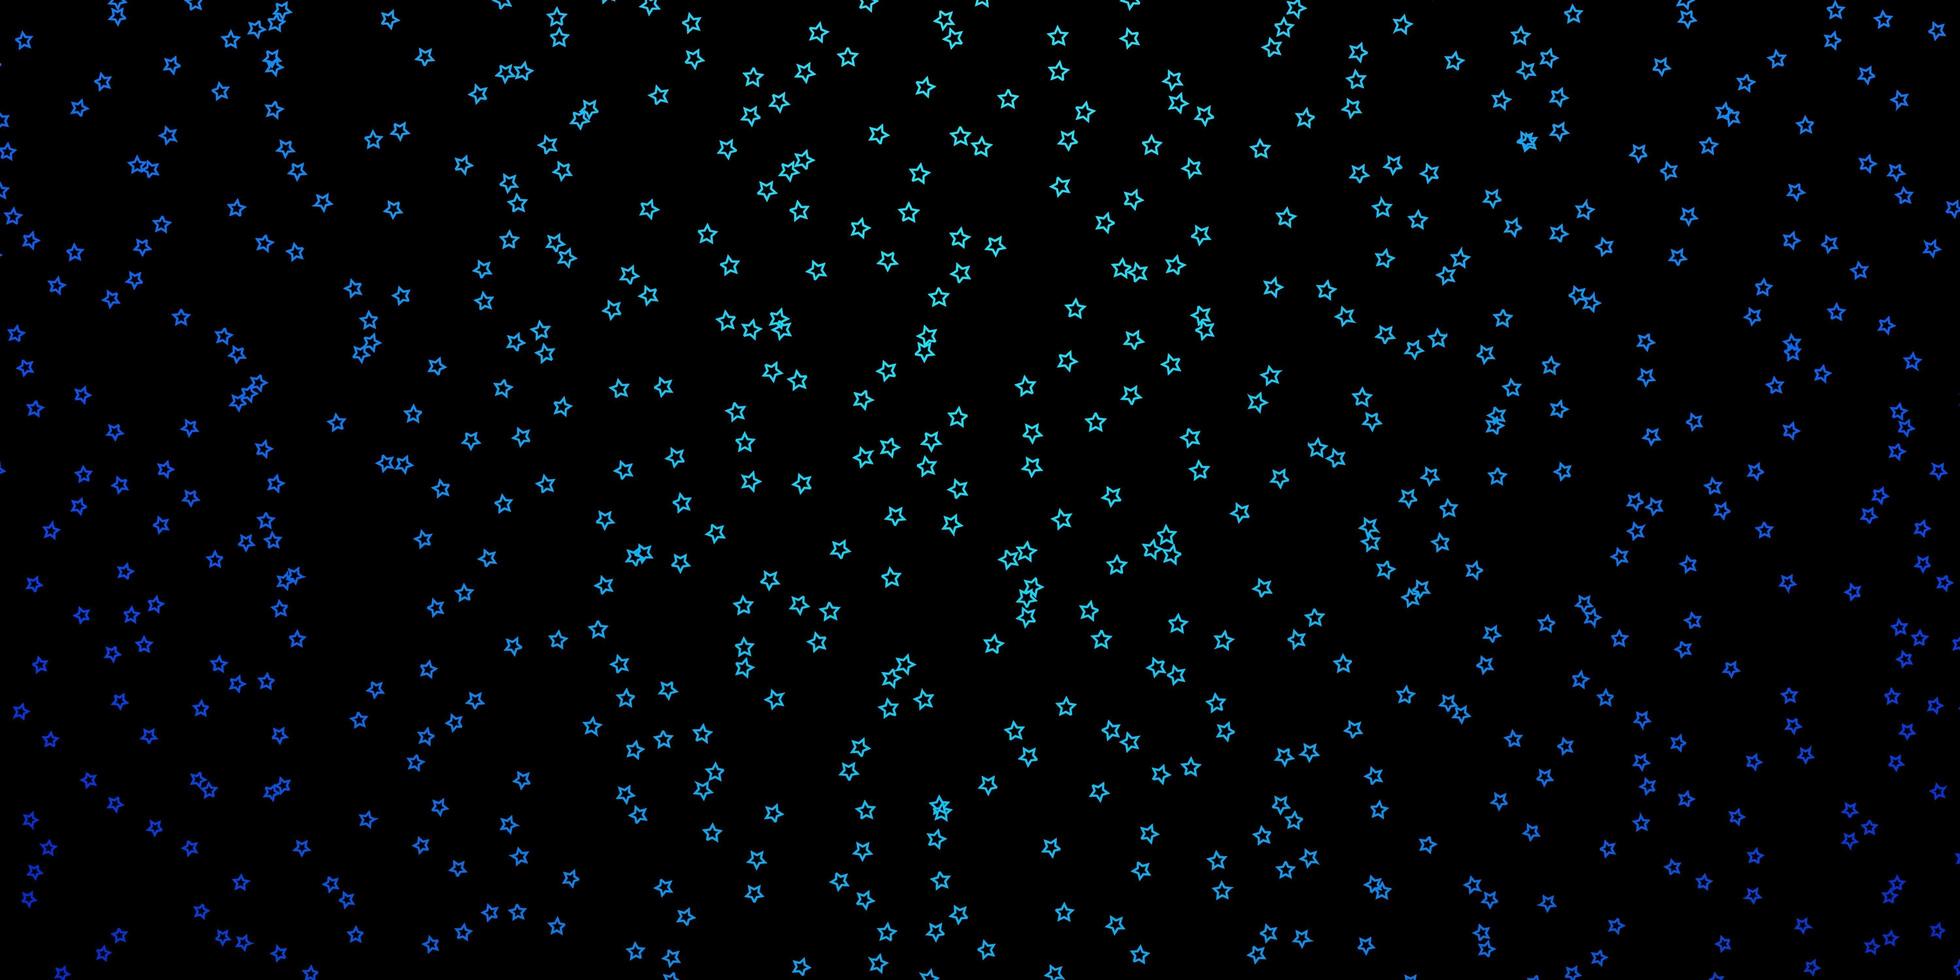 trama vettoriale blu scuro con bellissime stelle